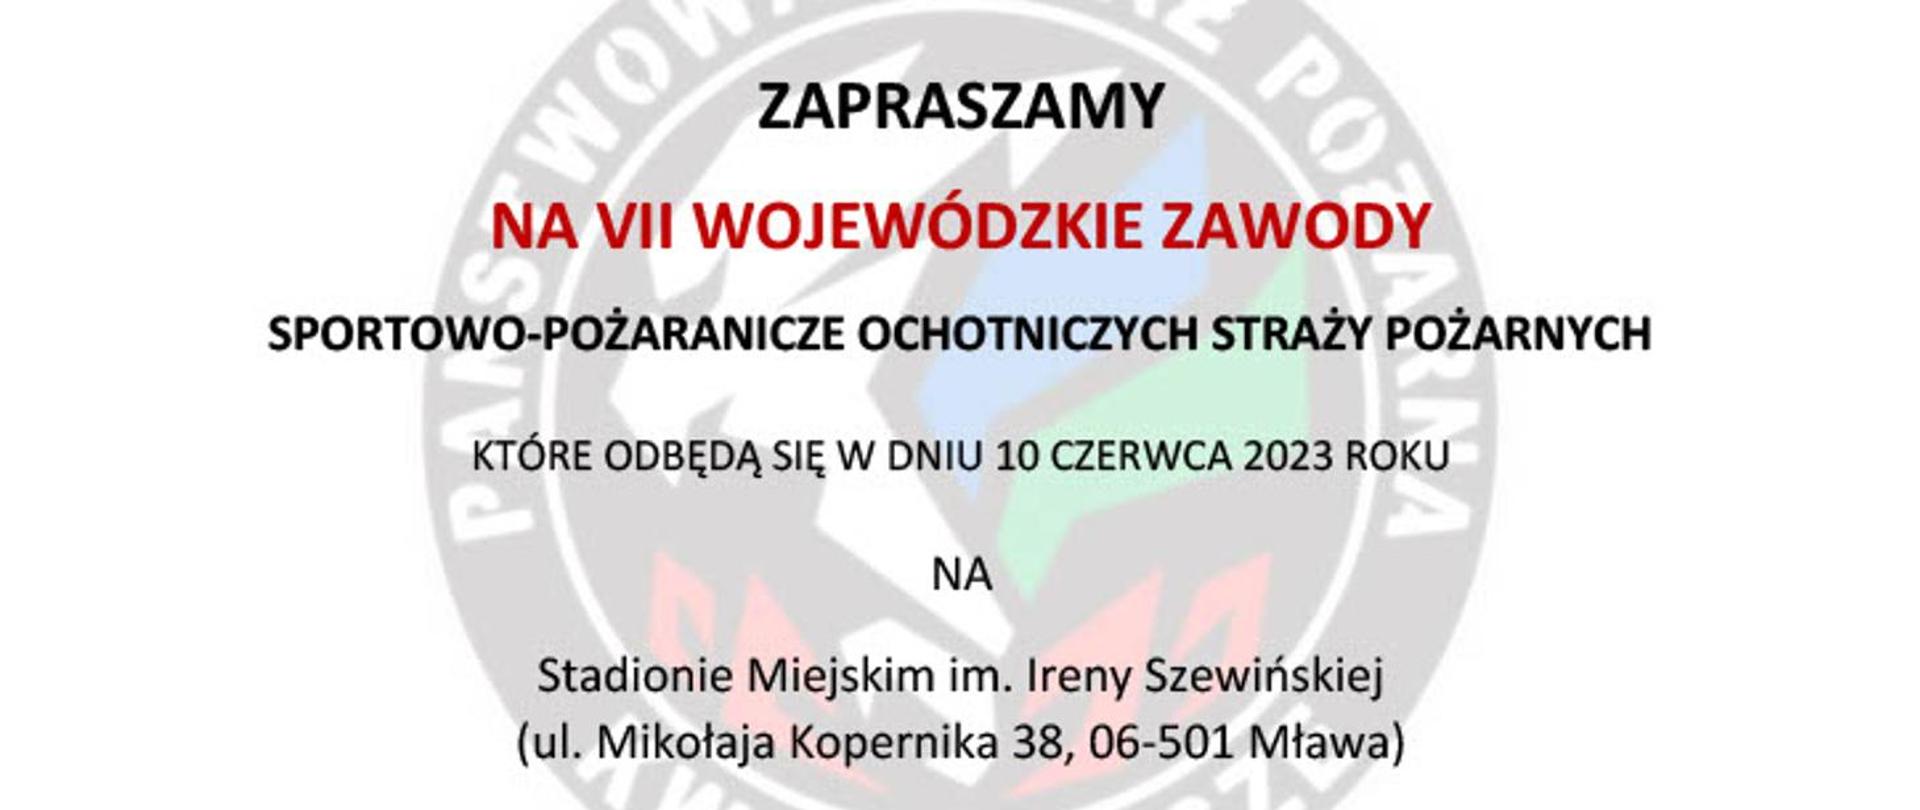 Zaproszenie na VII Wojewódzkie Zawody Sportowo- Pożarnicze Ochotniczych Straży Pożarnych Mława 2023